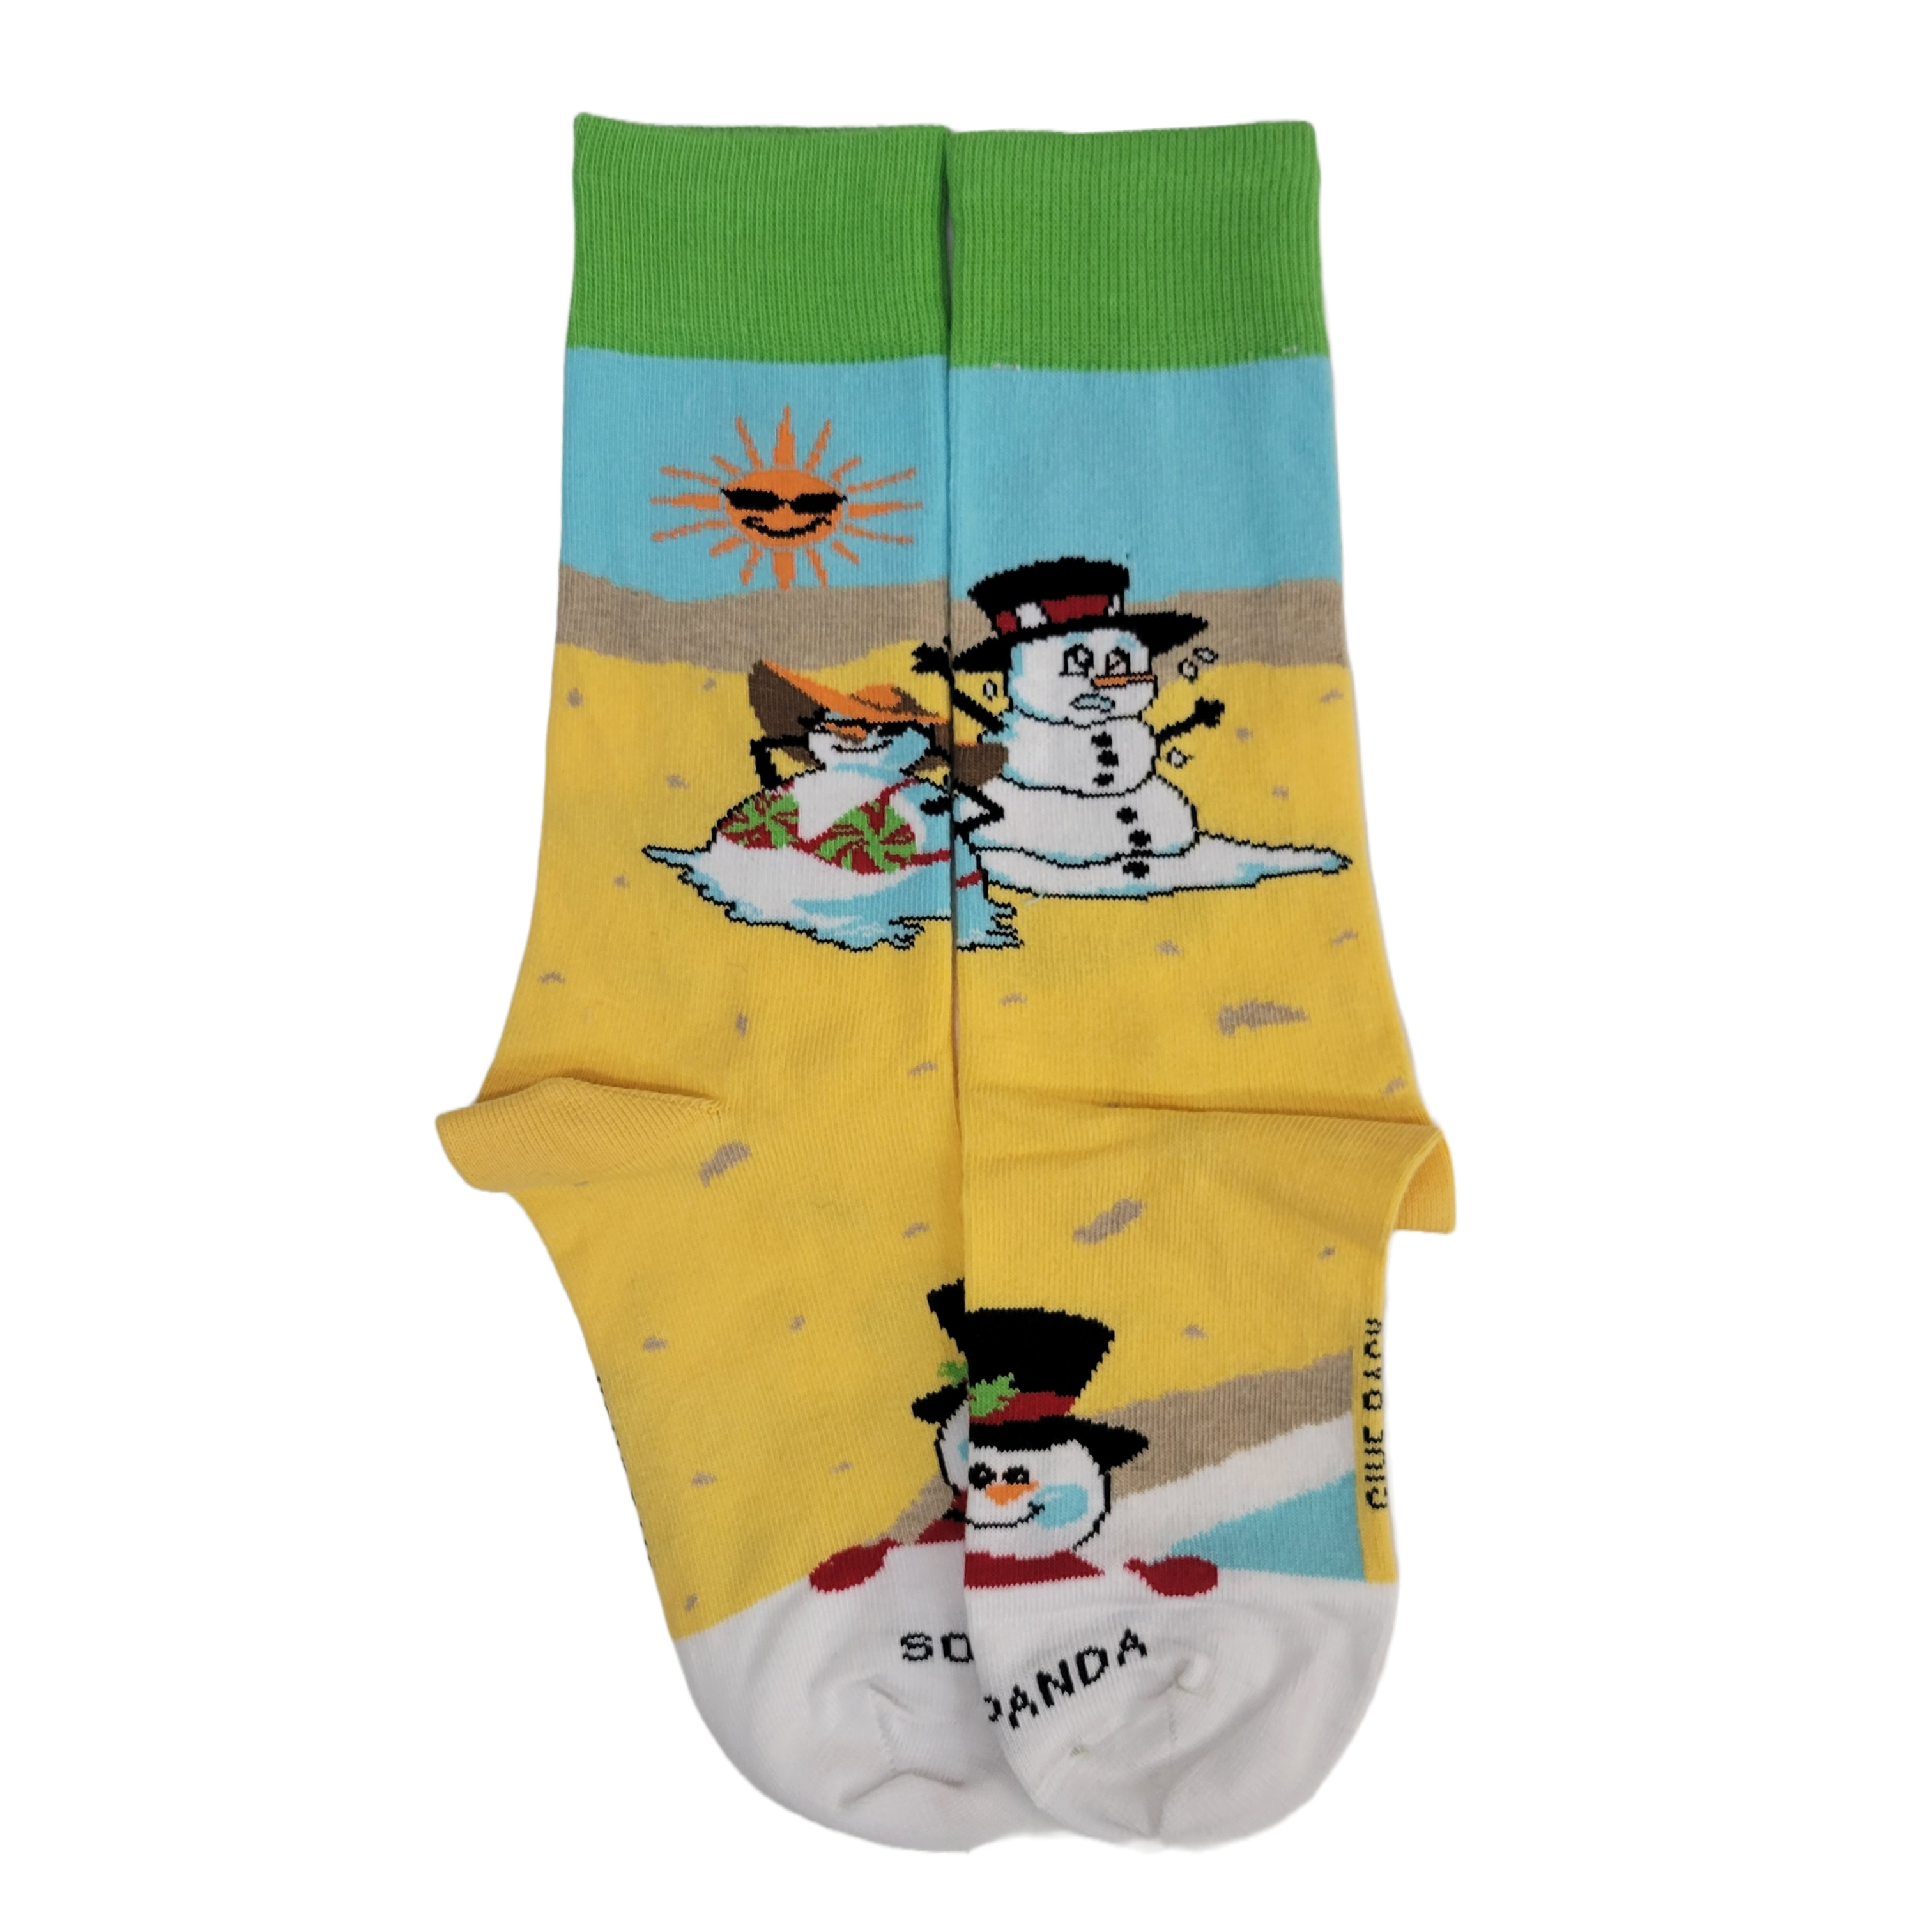 Beach Snowmen Socks from the Sock Panda (Adult Small)